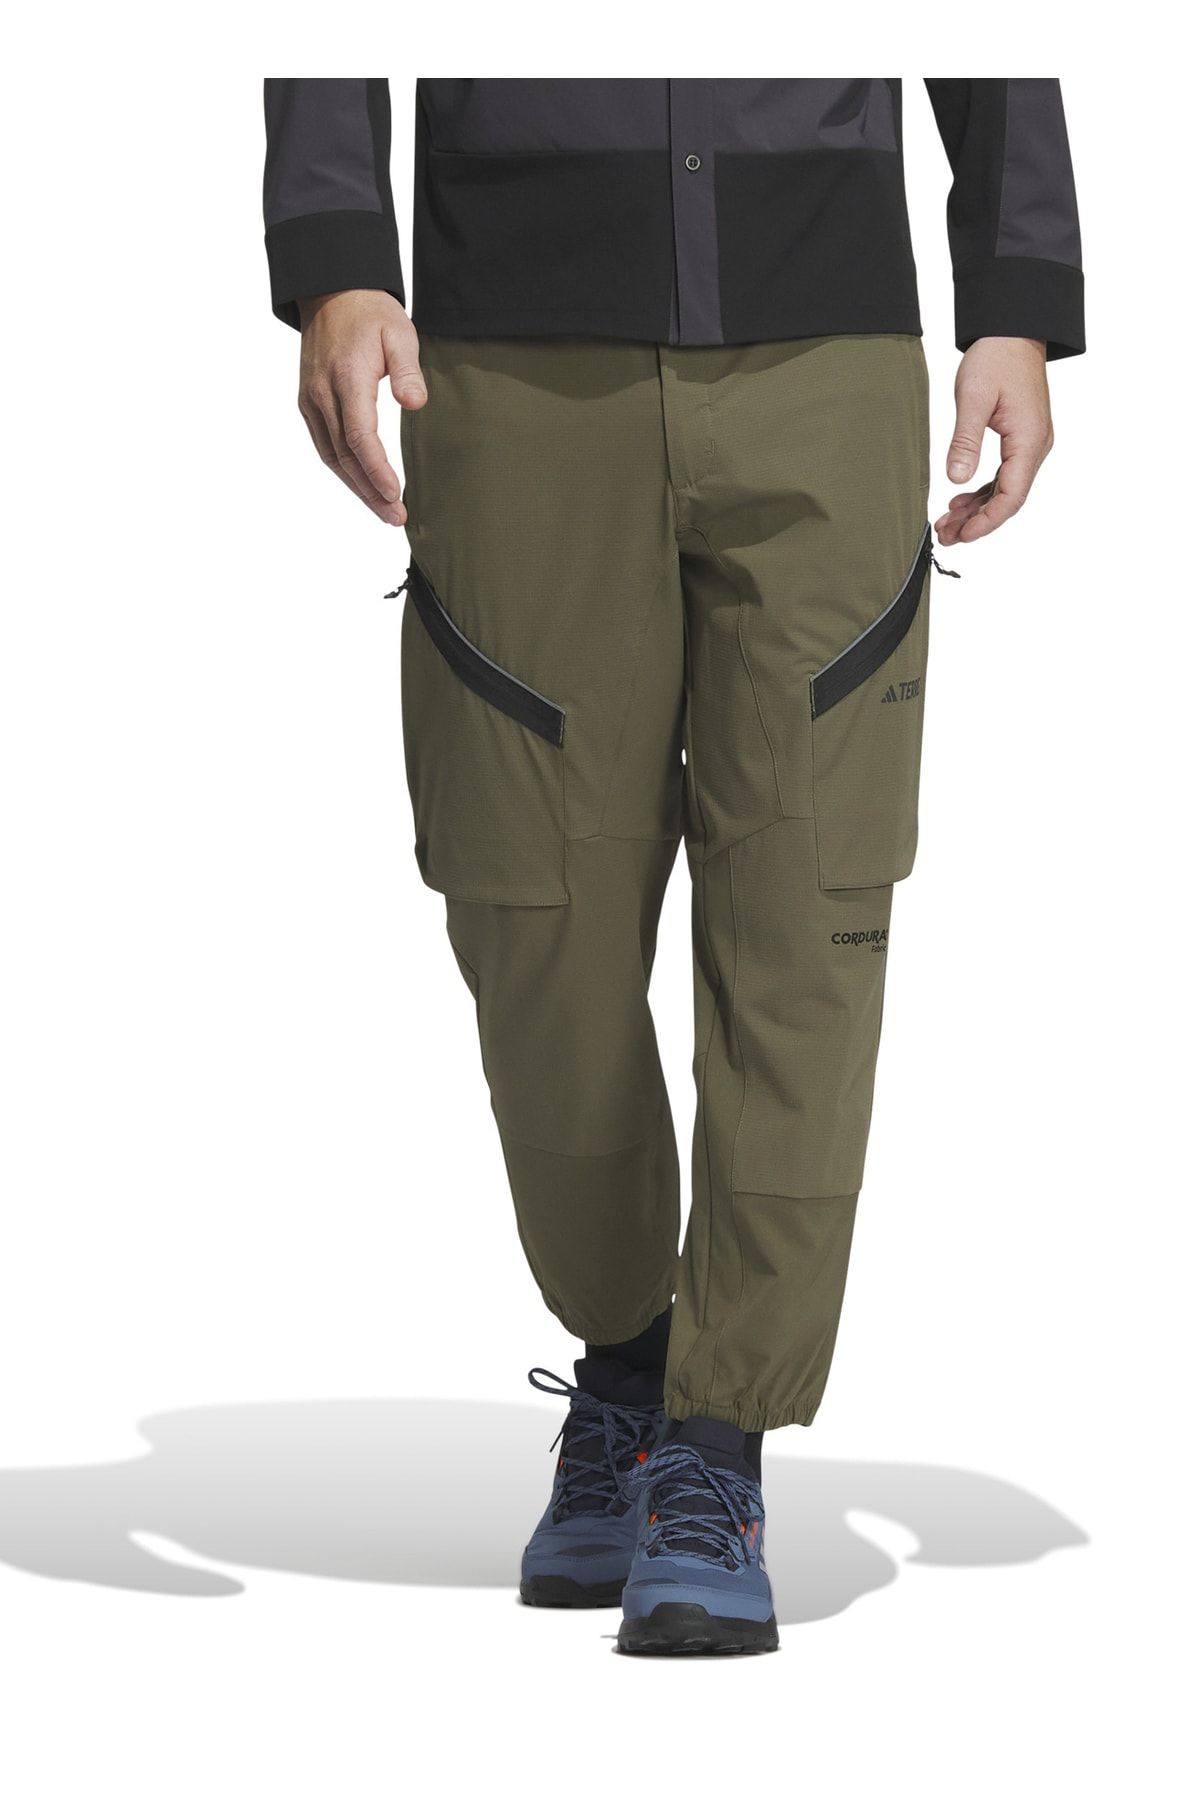 adidas Normal Koyu Haki Erkek Eşofman Altı Ic7995 Utl Cargo Pants